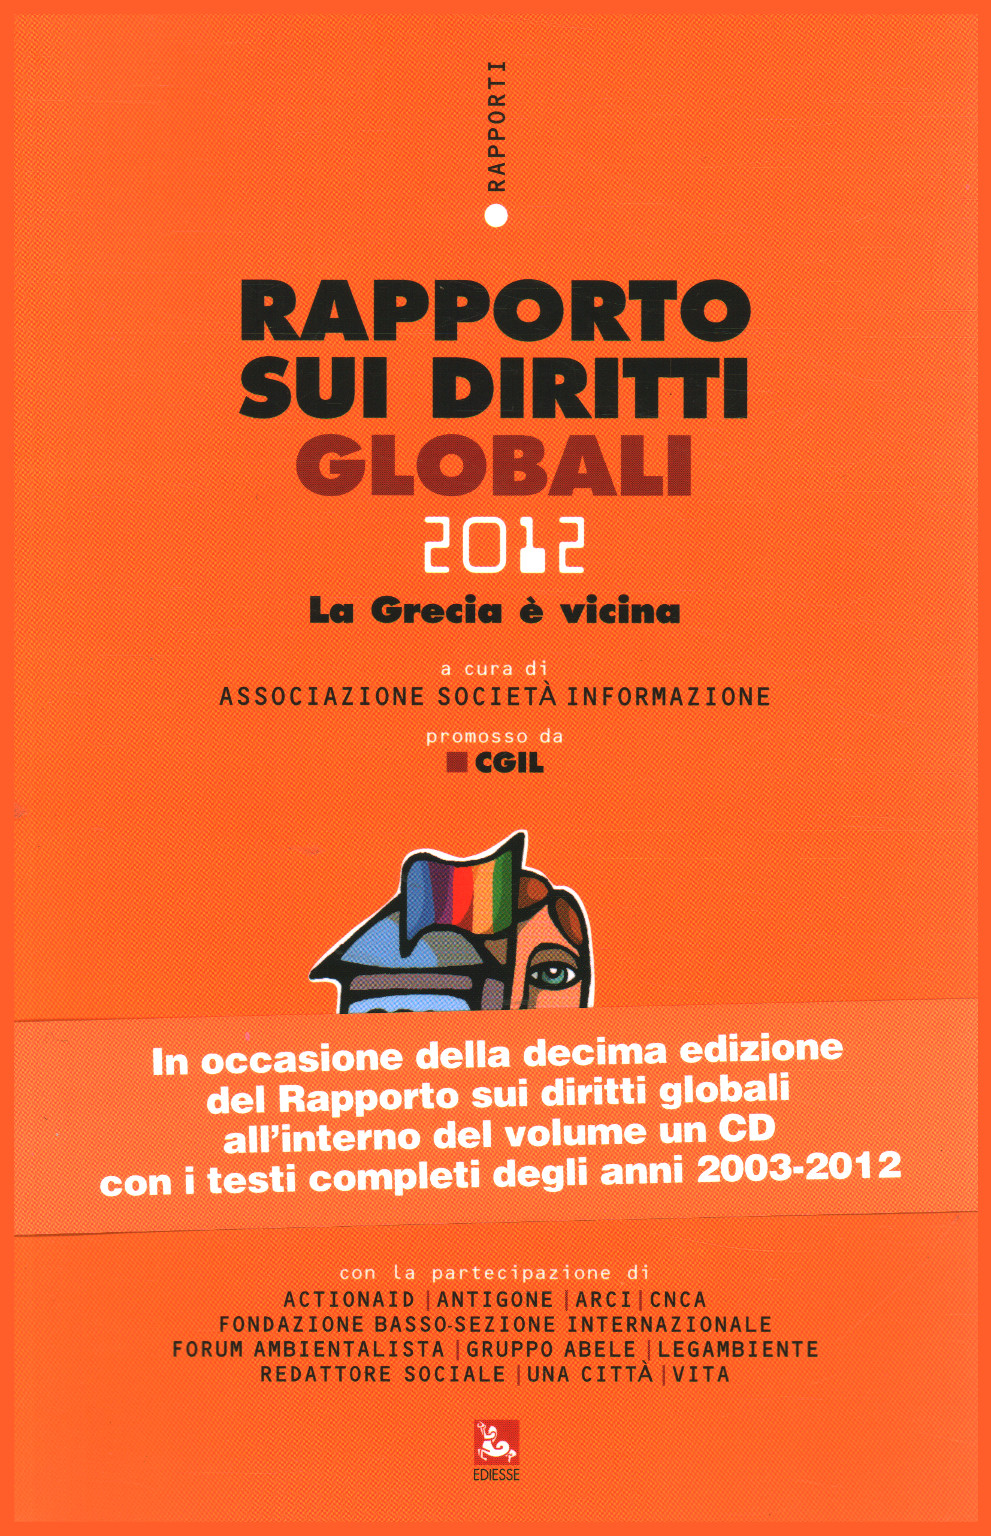 Bericht über die weltweiten rechte 2012, Gesellschaft Information.